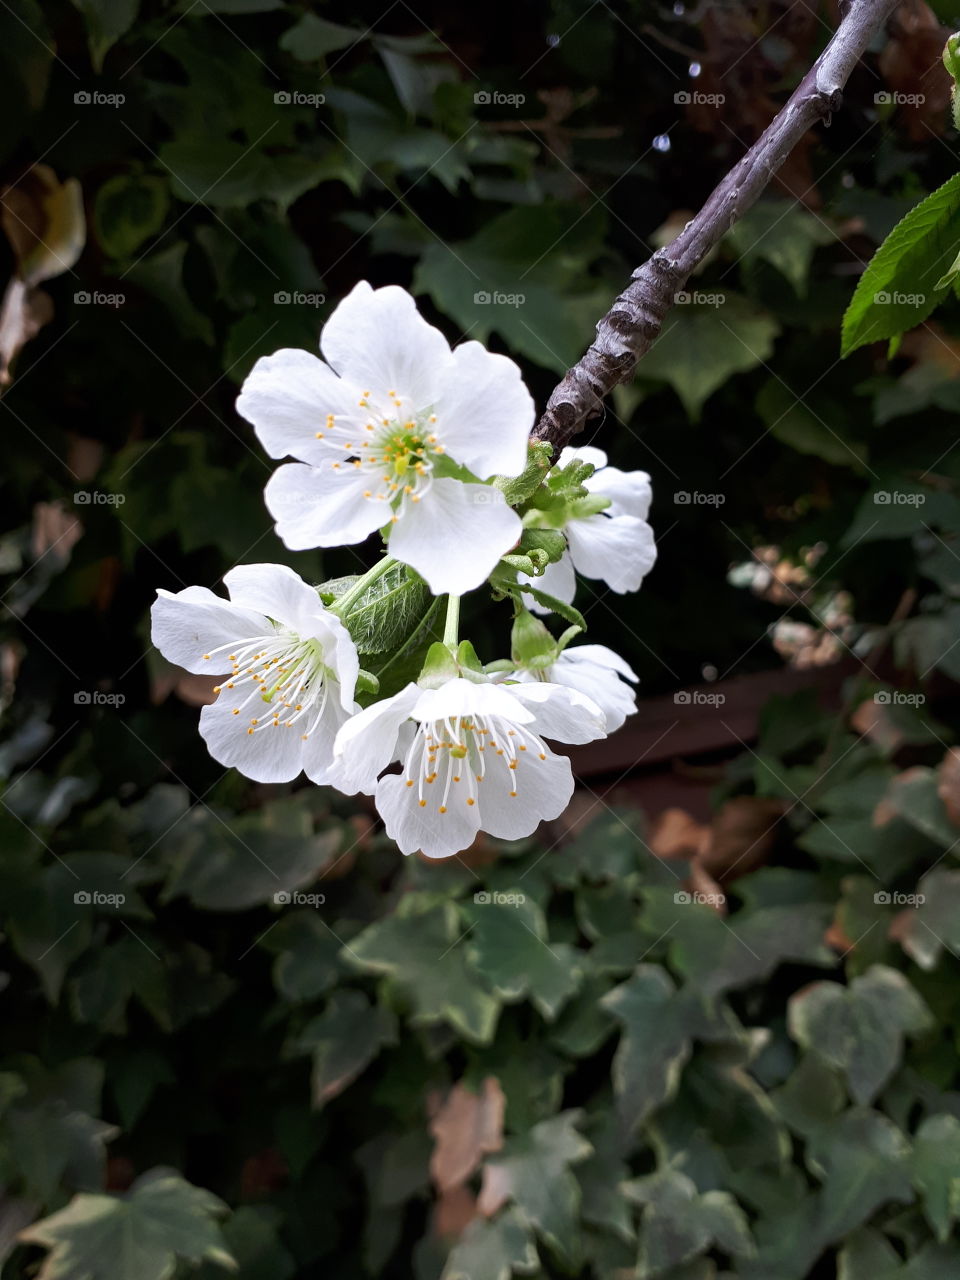 Five ocherry blossoms against ivopen